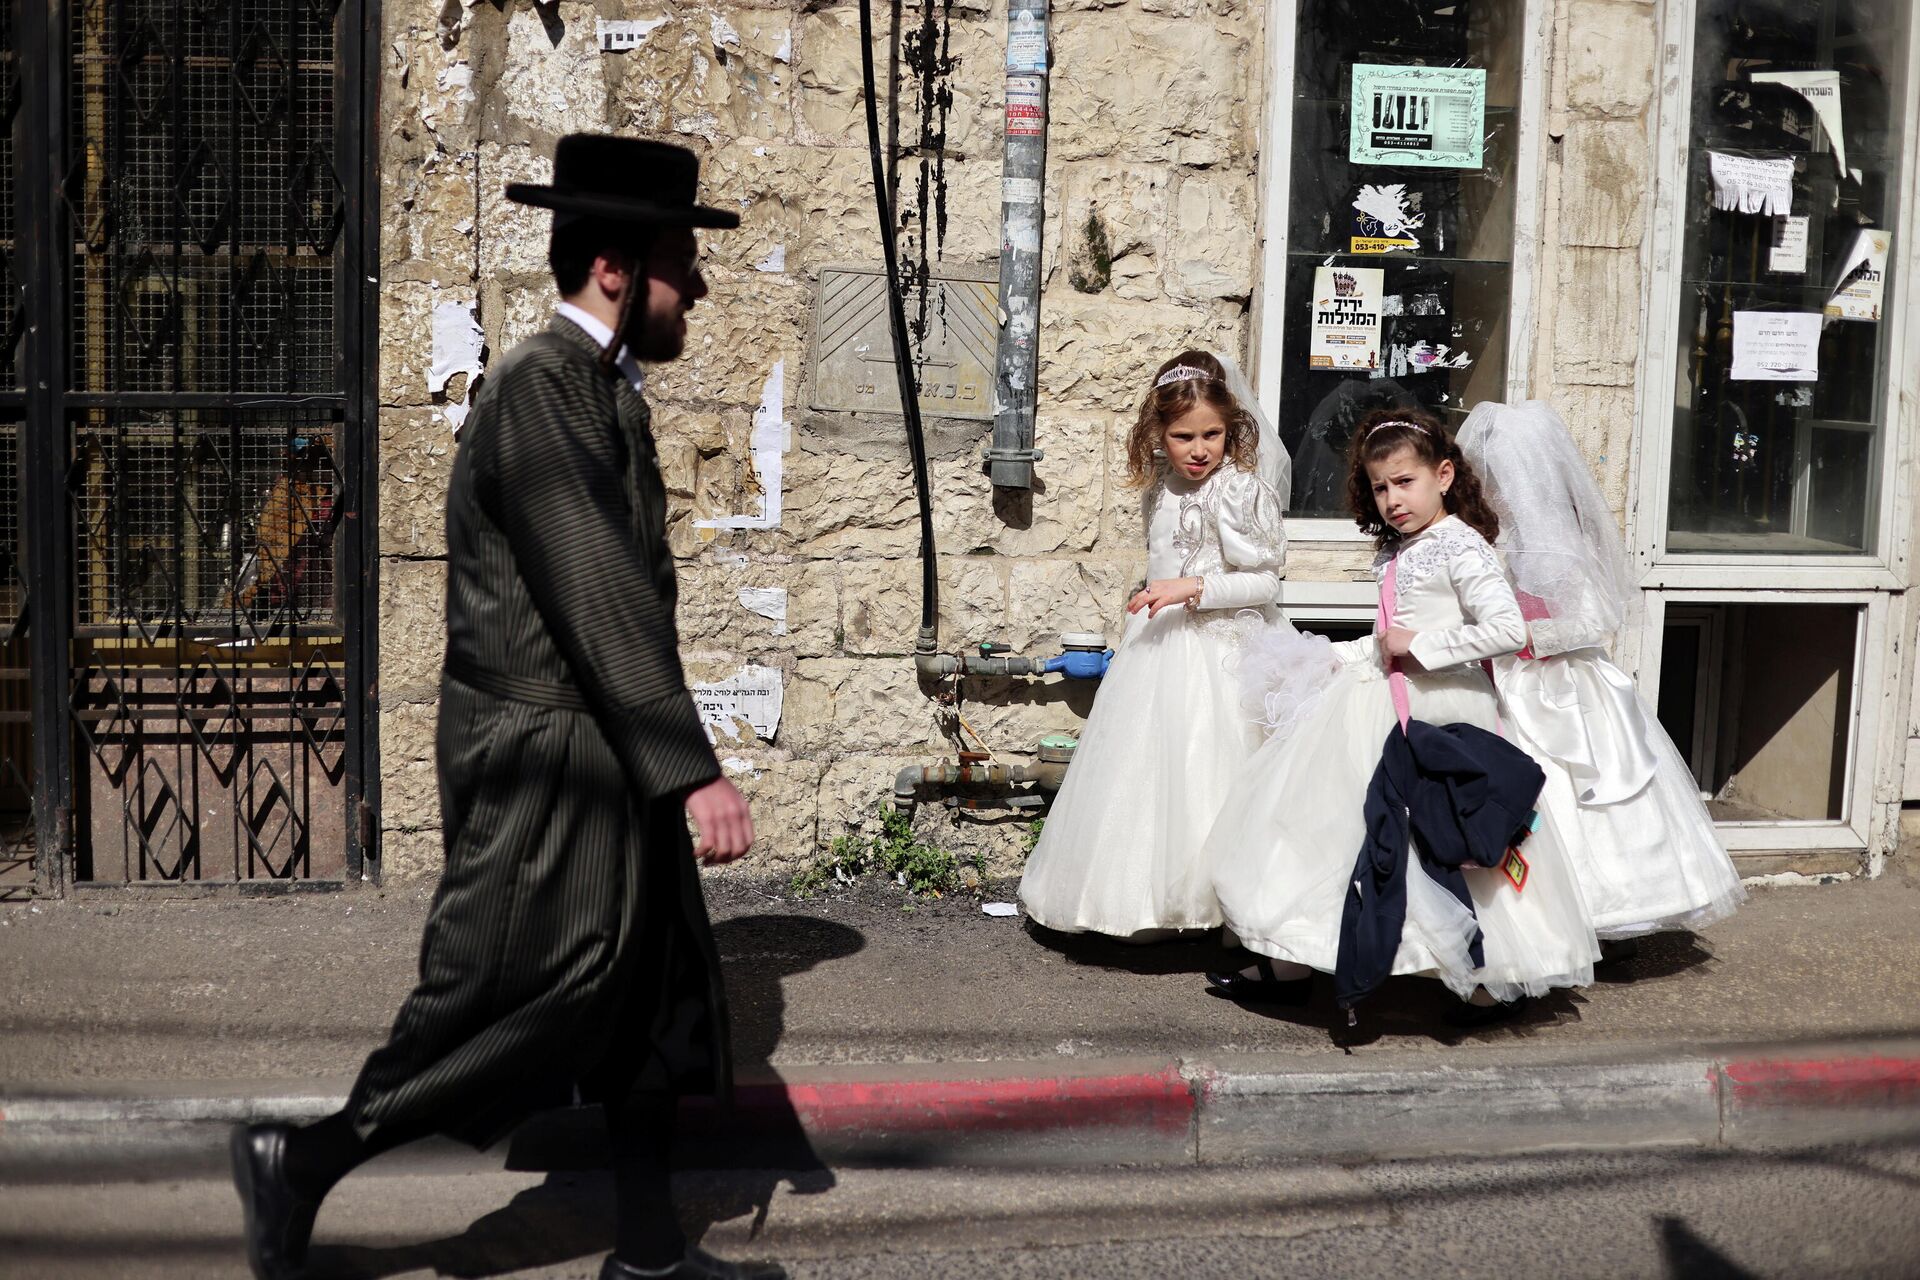 Judíos se preparan para el carnaval judío Purim, Jerusalén, el 24 de febrero de 2021 - Sputnik Mundo, 1920, 24.02.2021